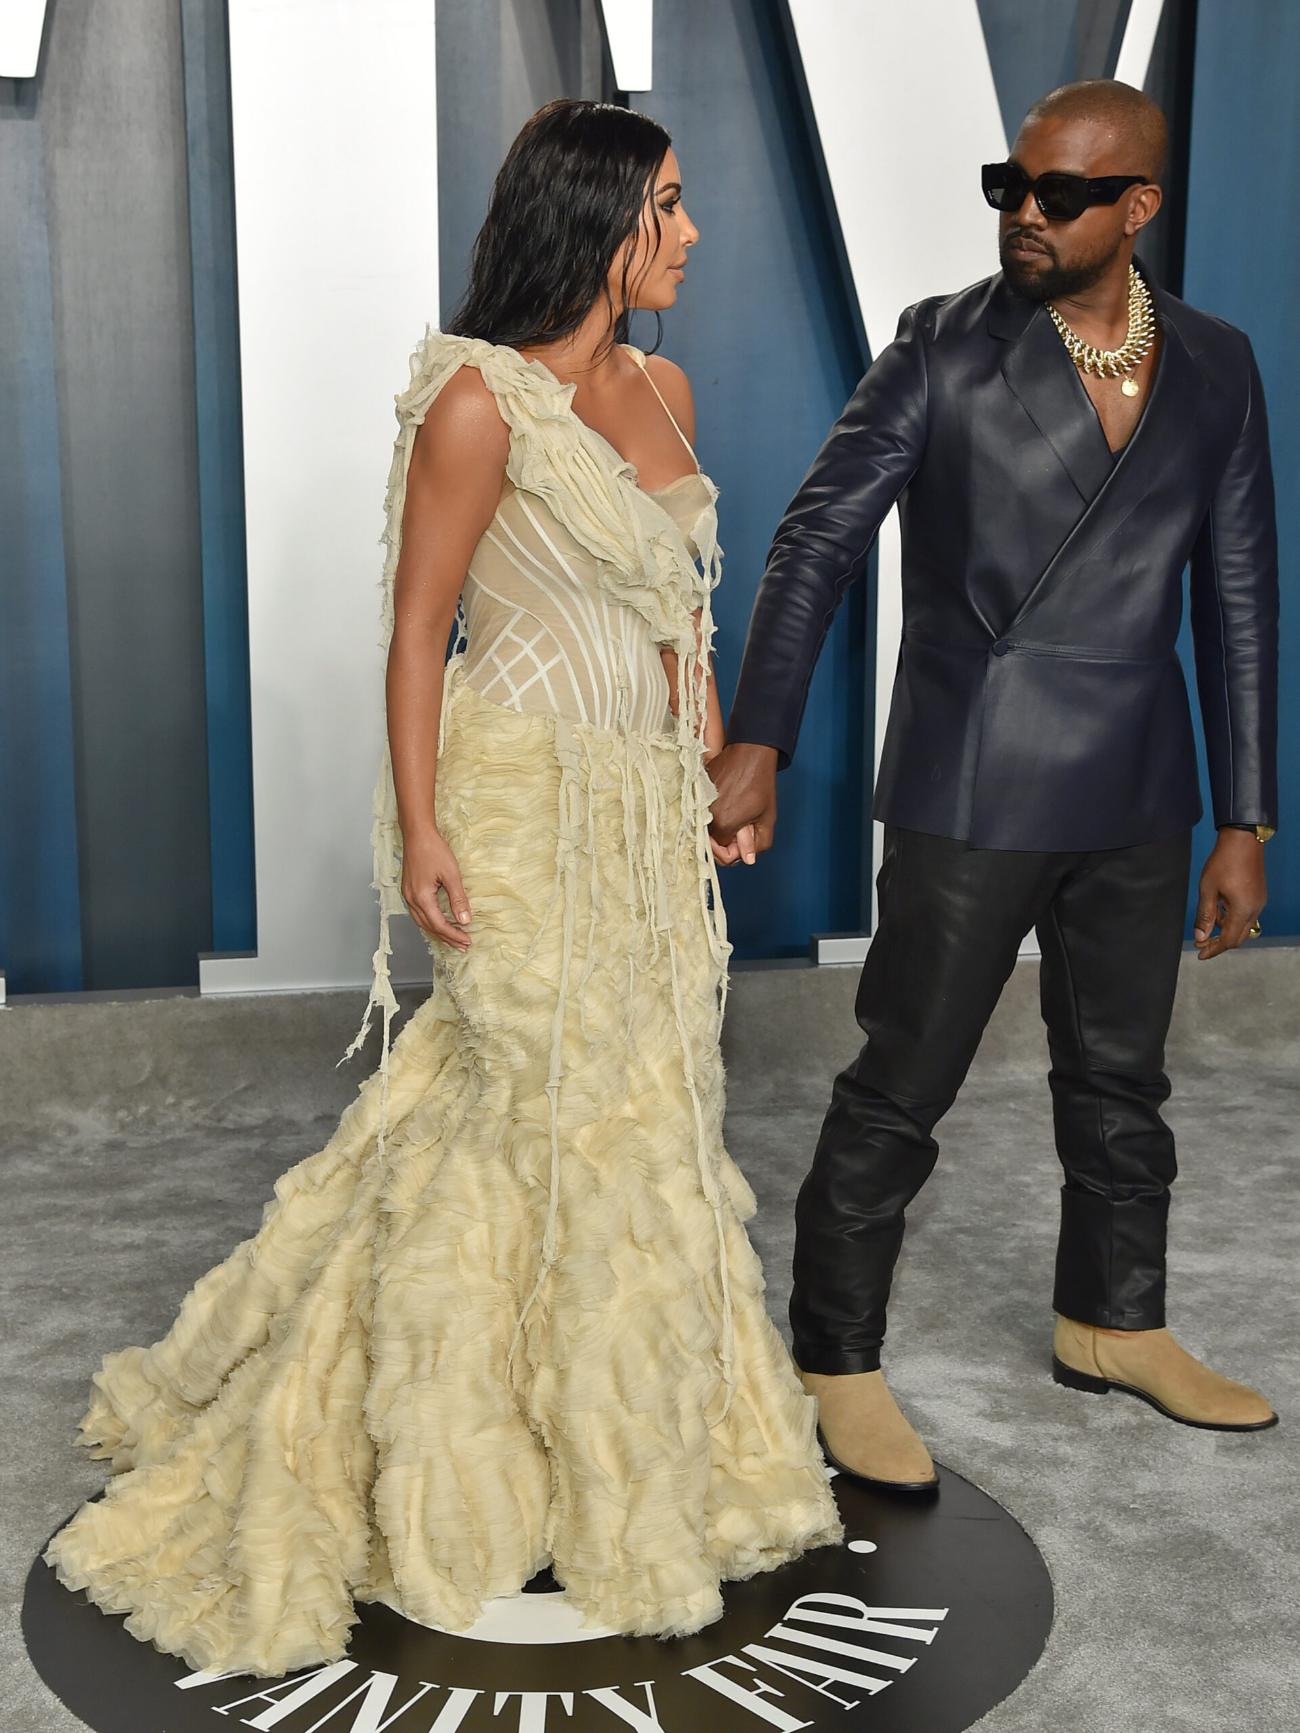 Kanye West Admits To 'Harassing' Ex-Wife Kim Kardashian